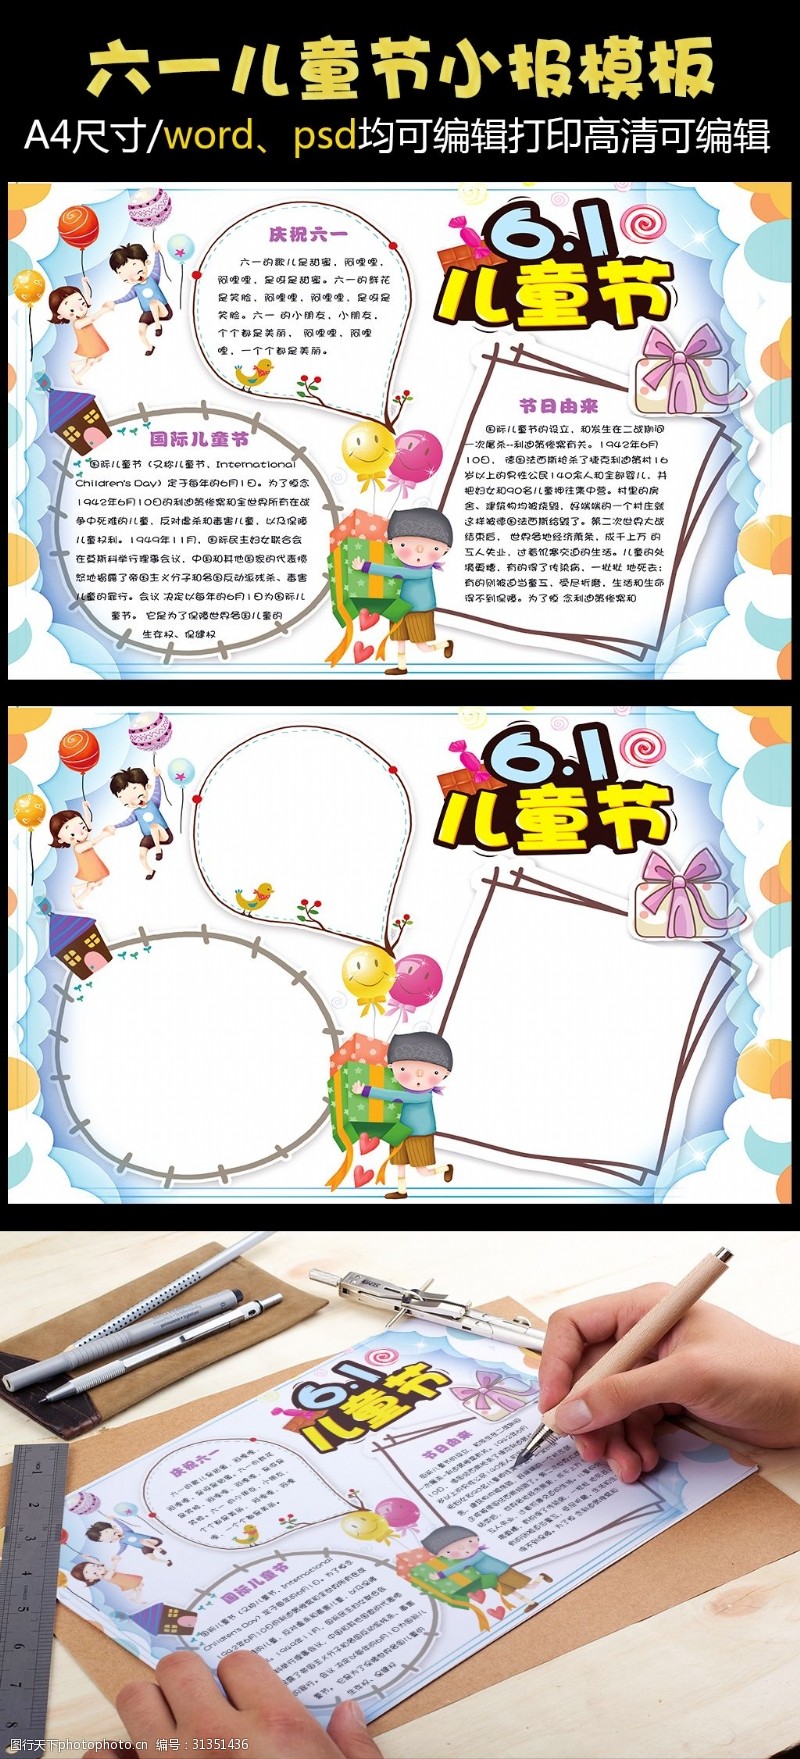 快乐61清新可爱六一儿童节小学生电子小报模板